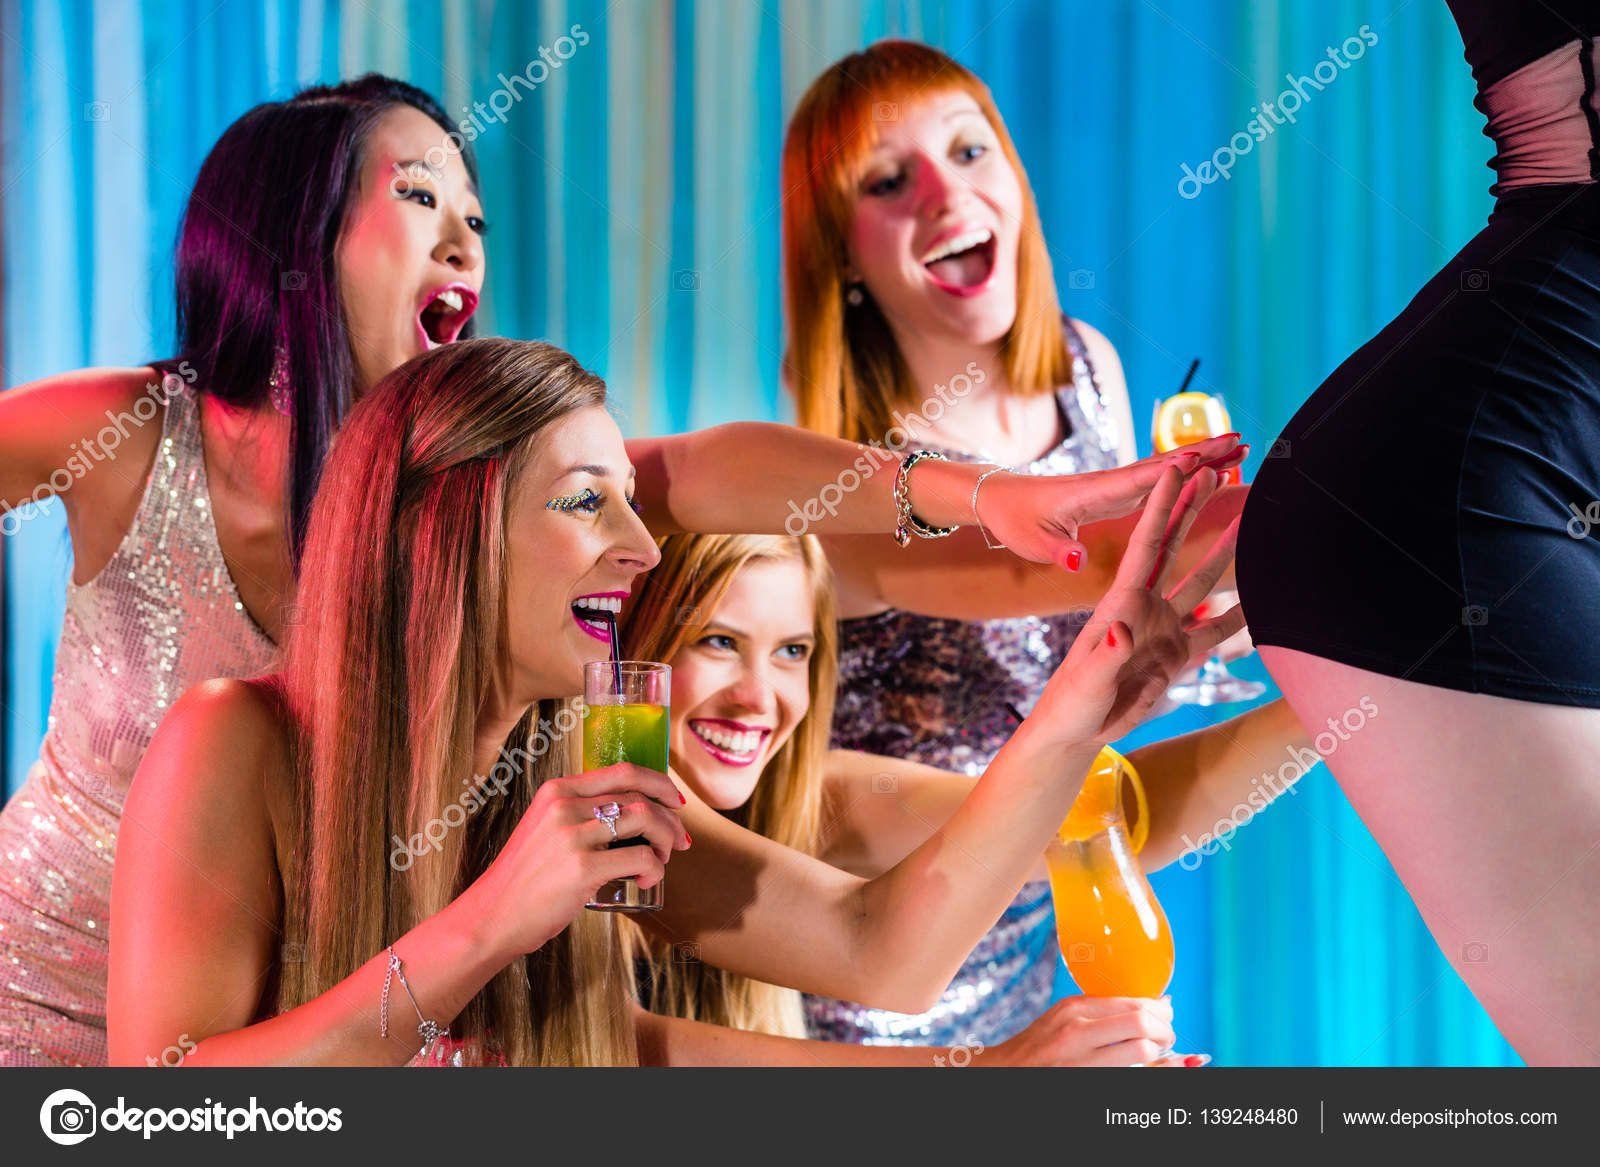 Female strip clubs